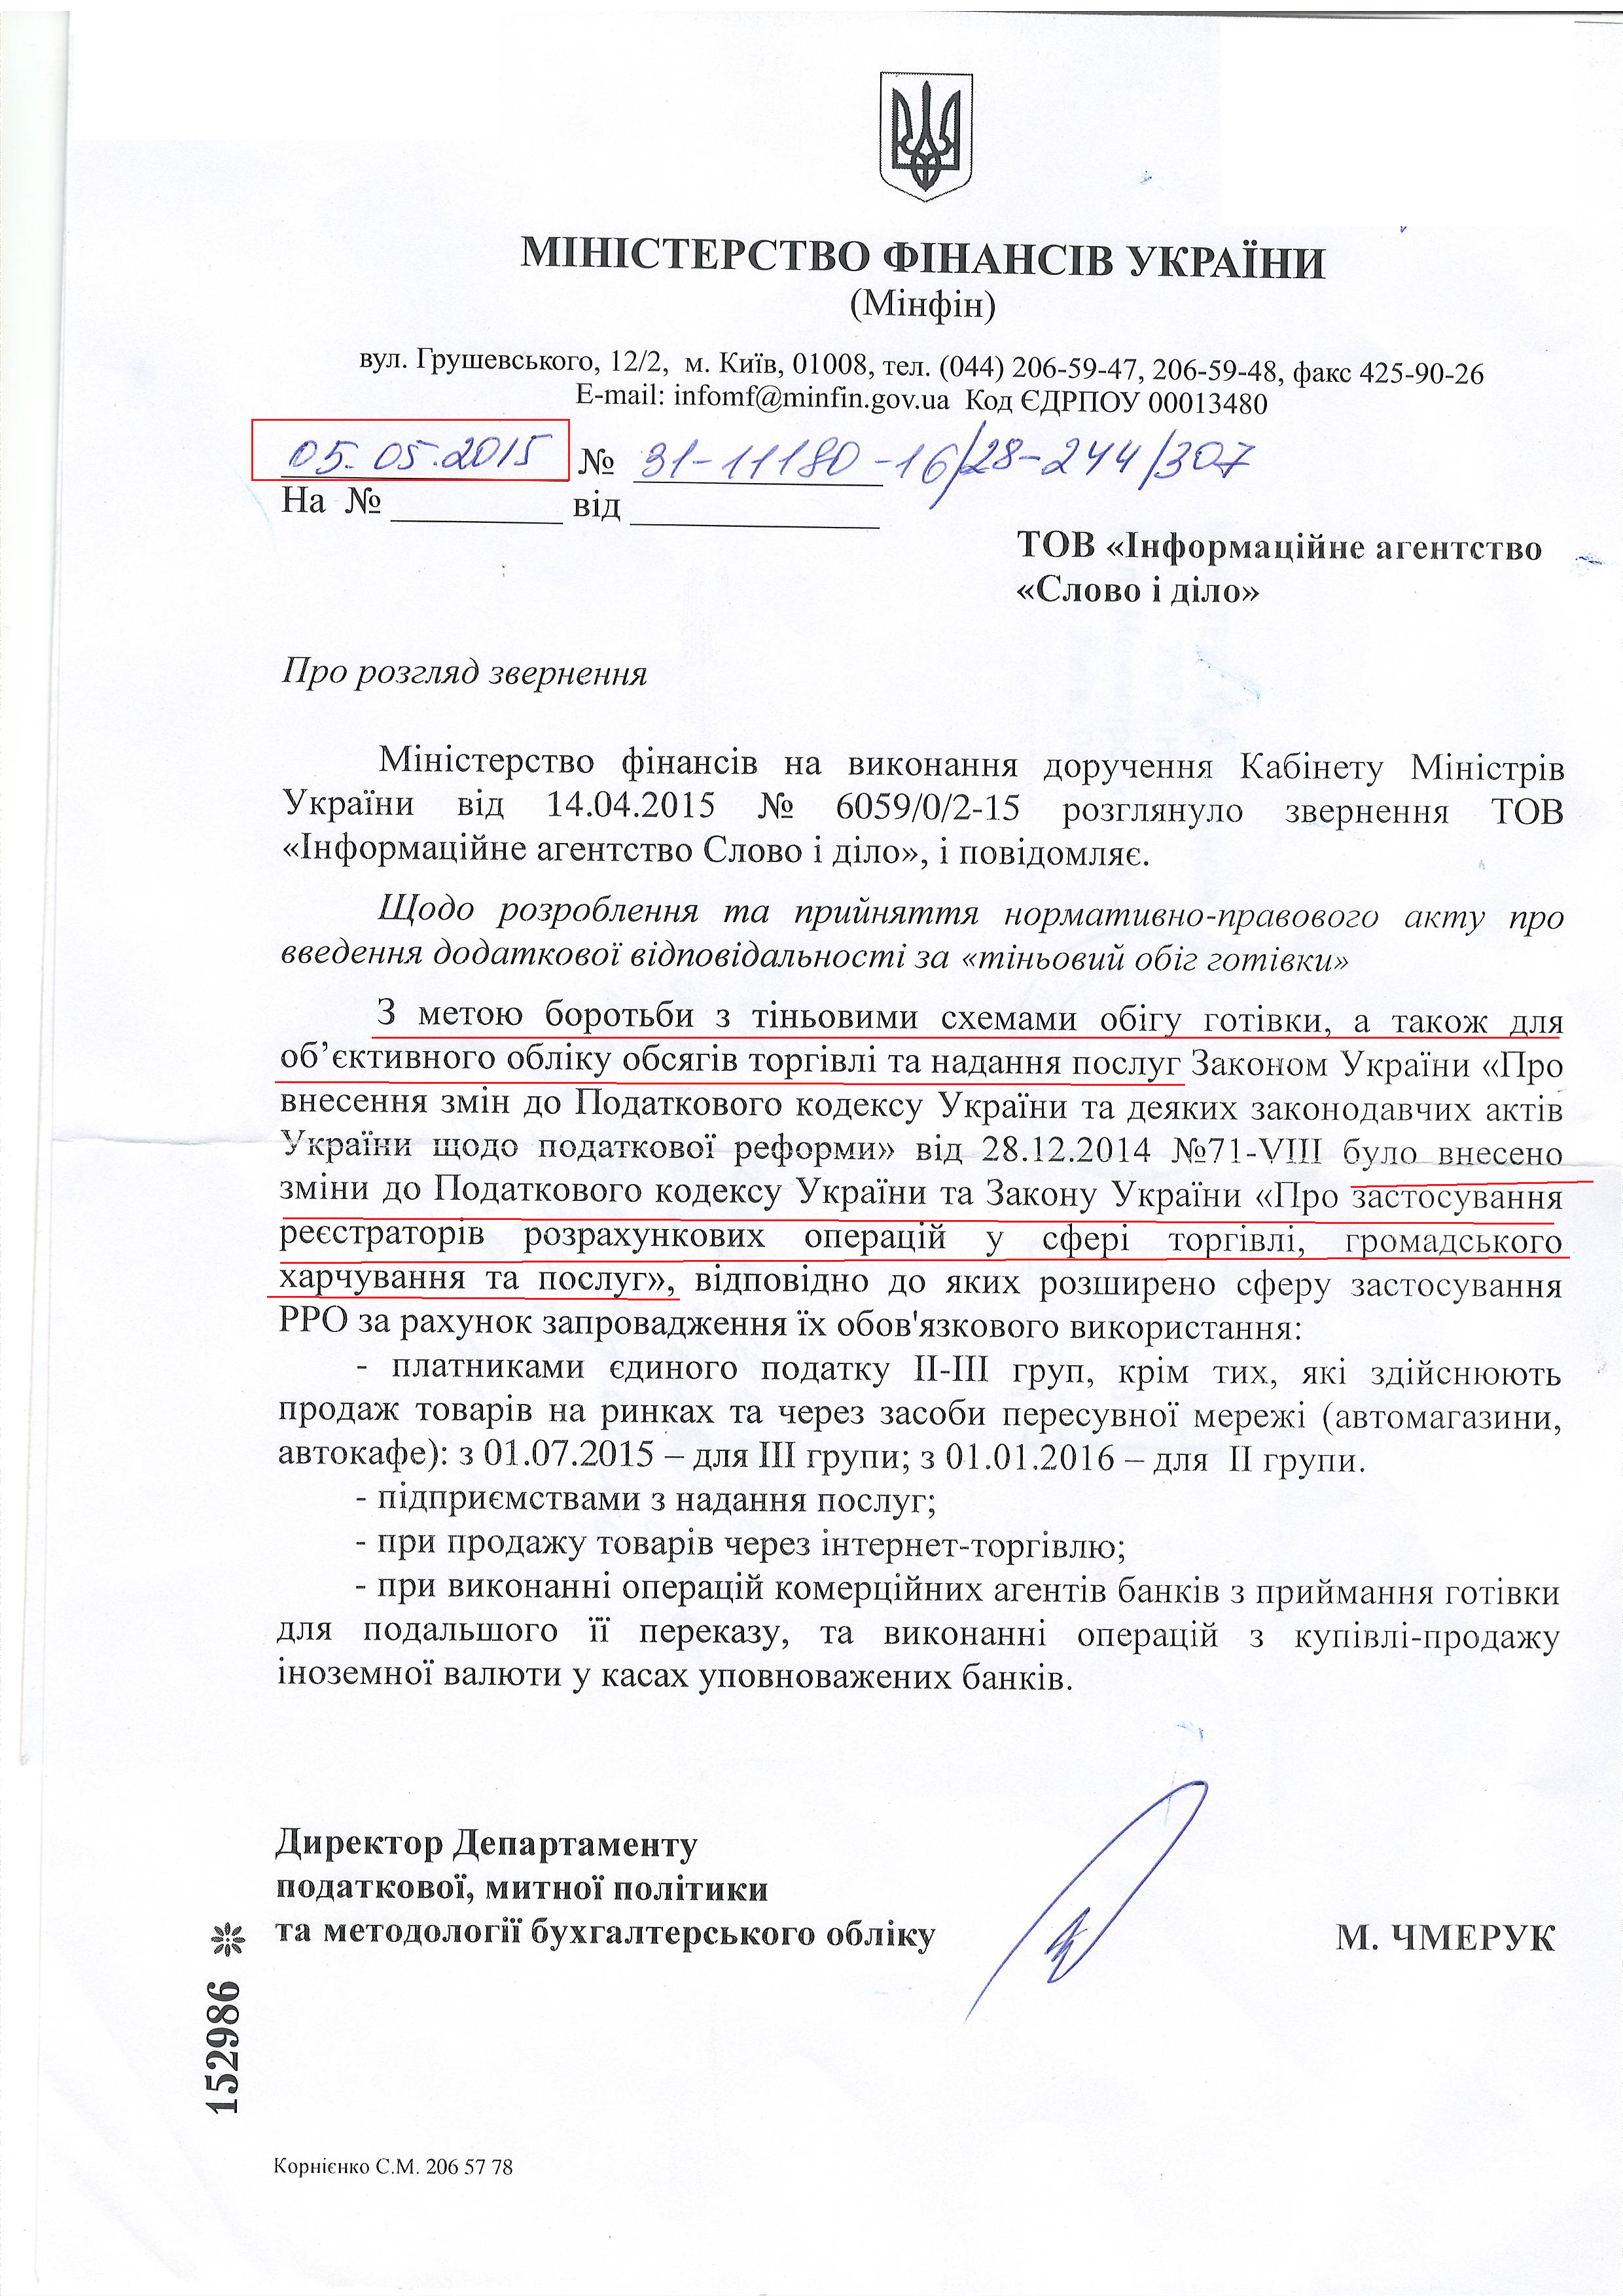 лист міністерства фінансів України від 5 травня 2015 року